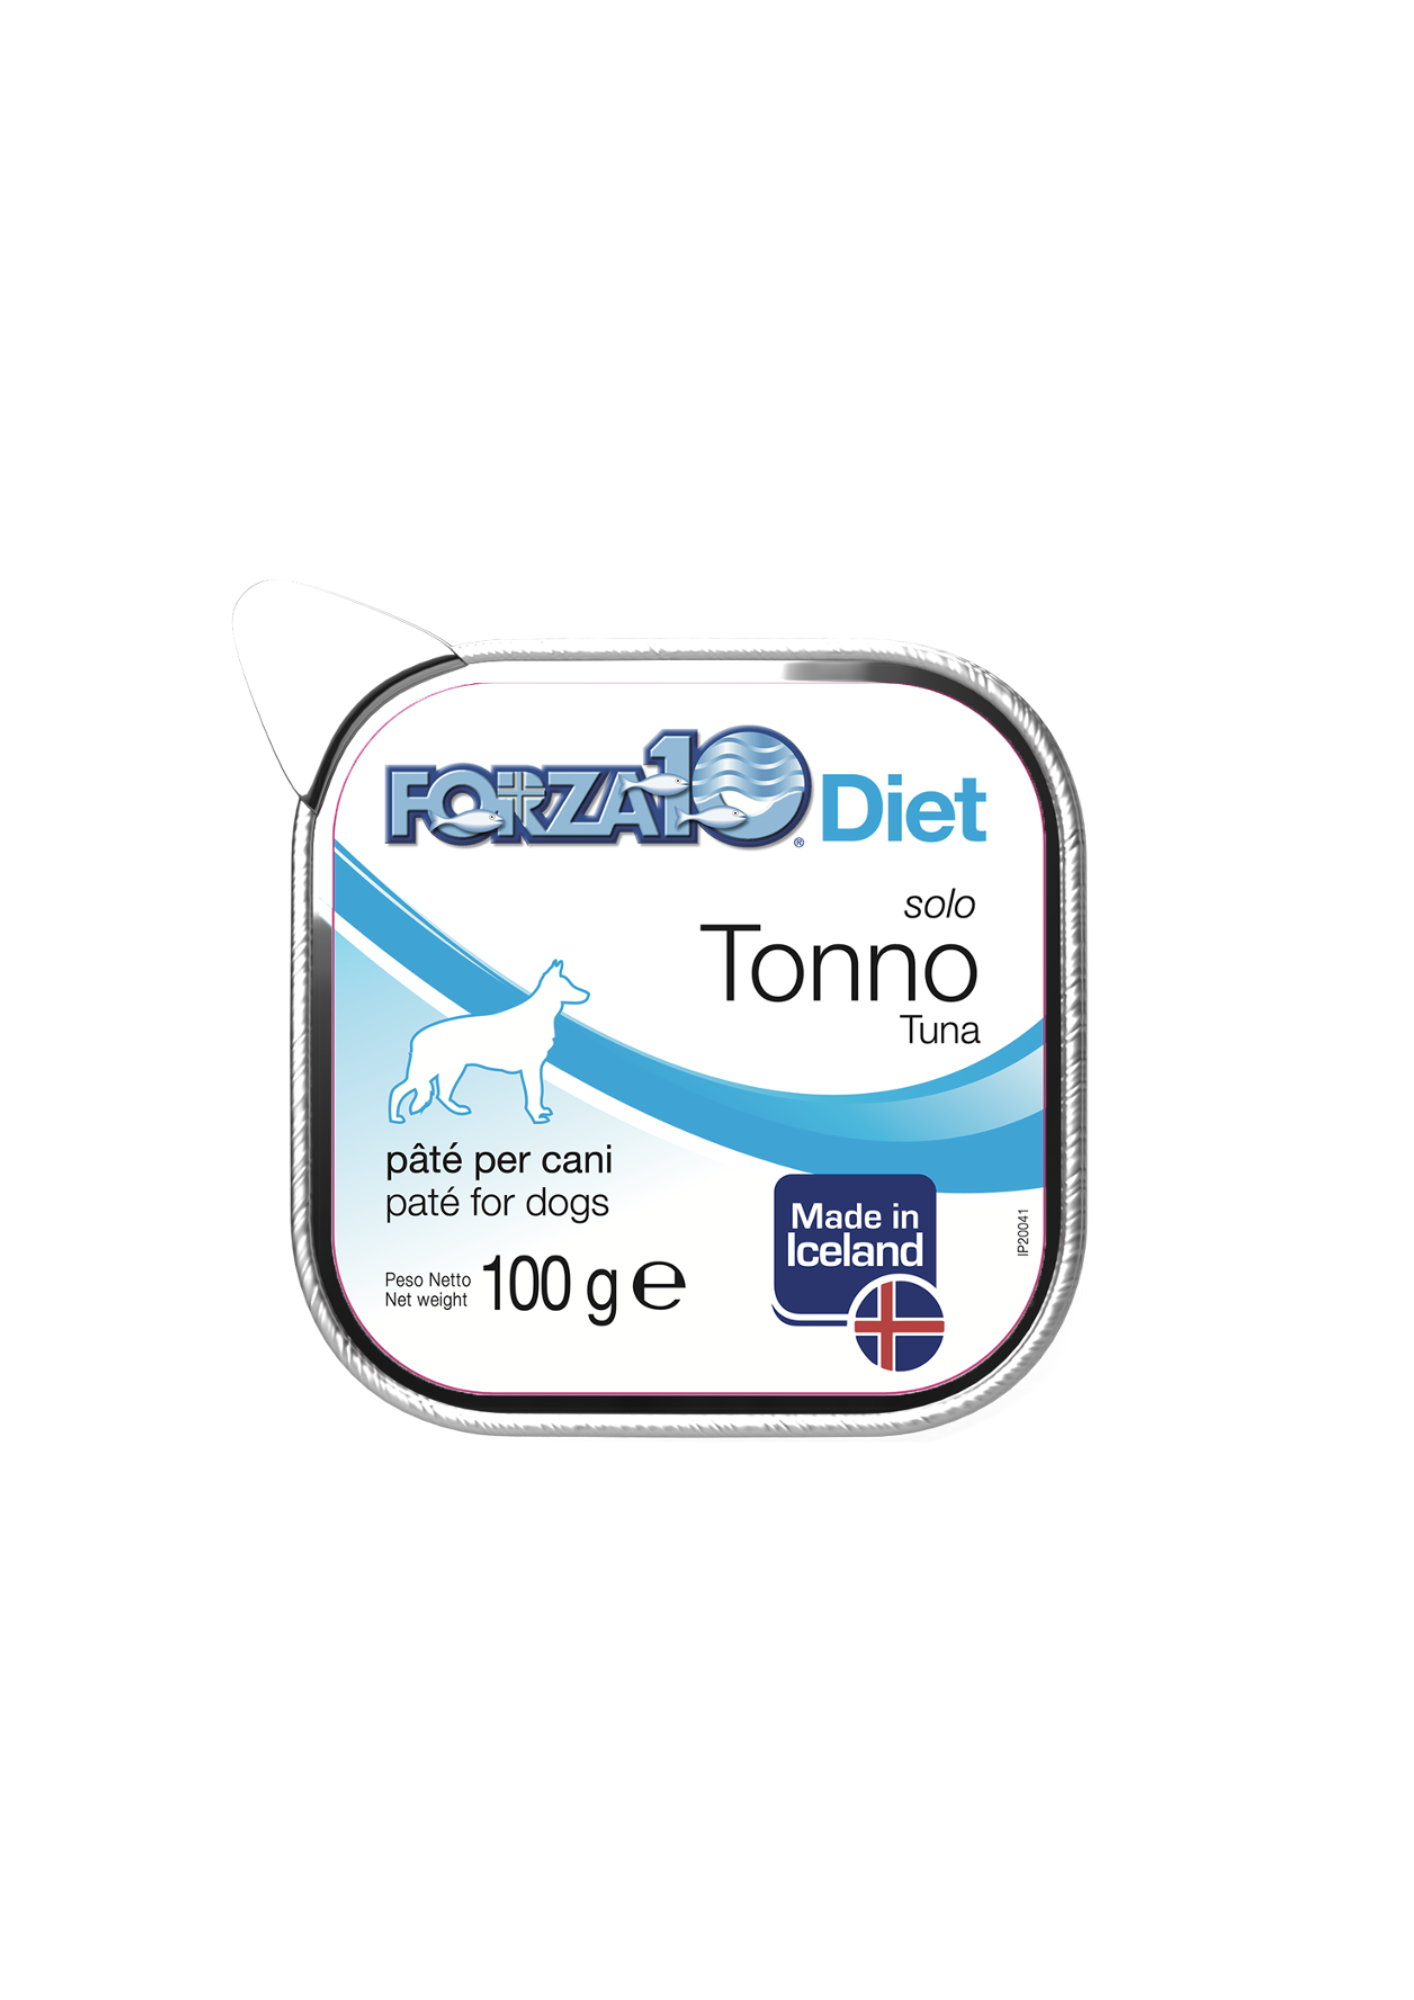 Forza10 Solo Diet Tuna mitrā barība suņiem ar tunci pārtikas nepanesamību un alerģijas gadījumos, 300g